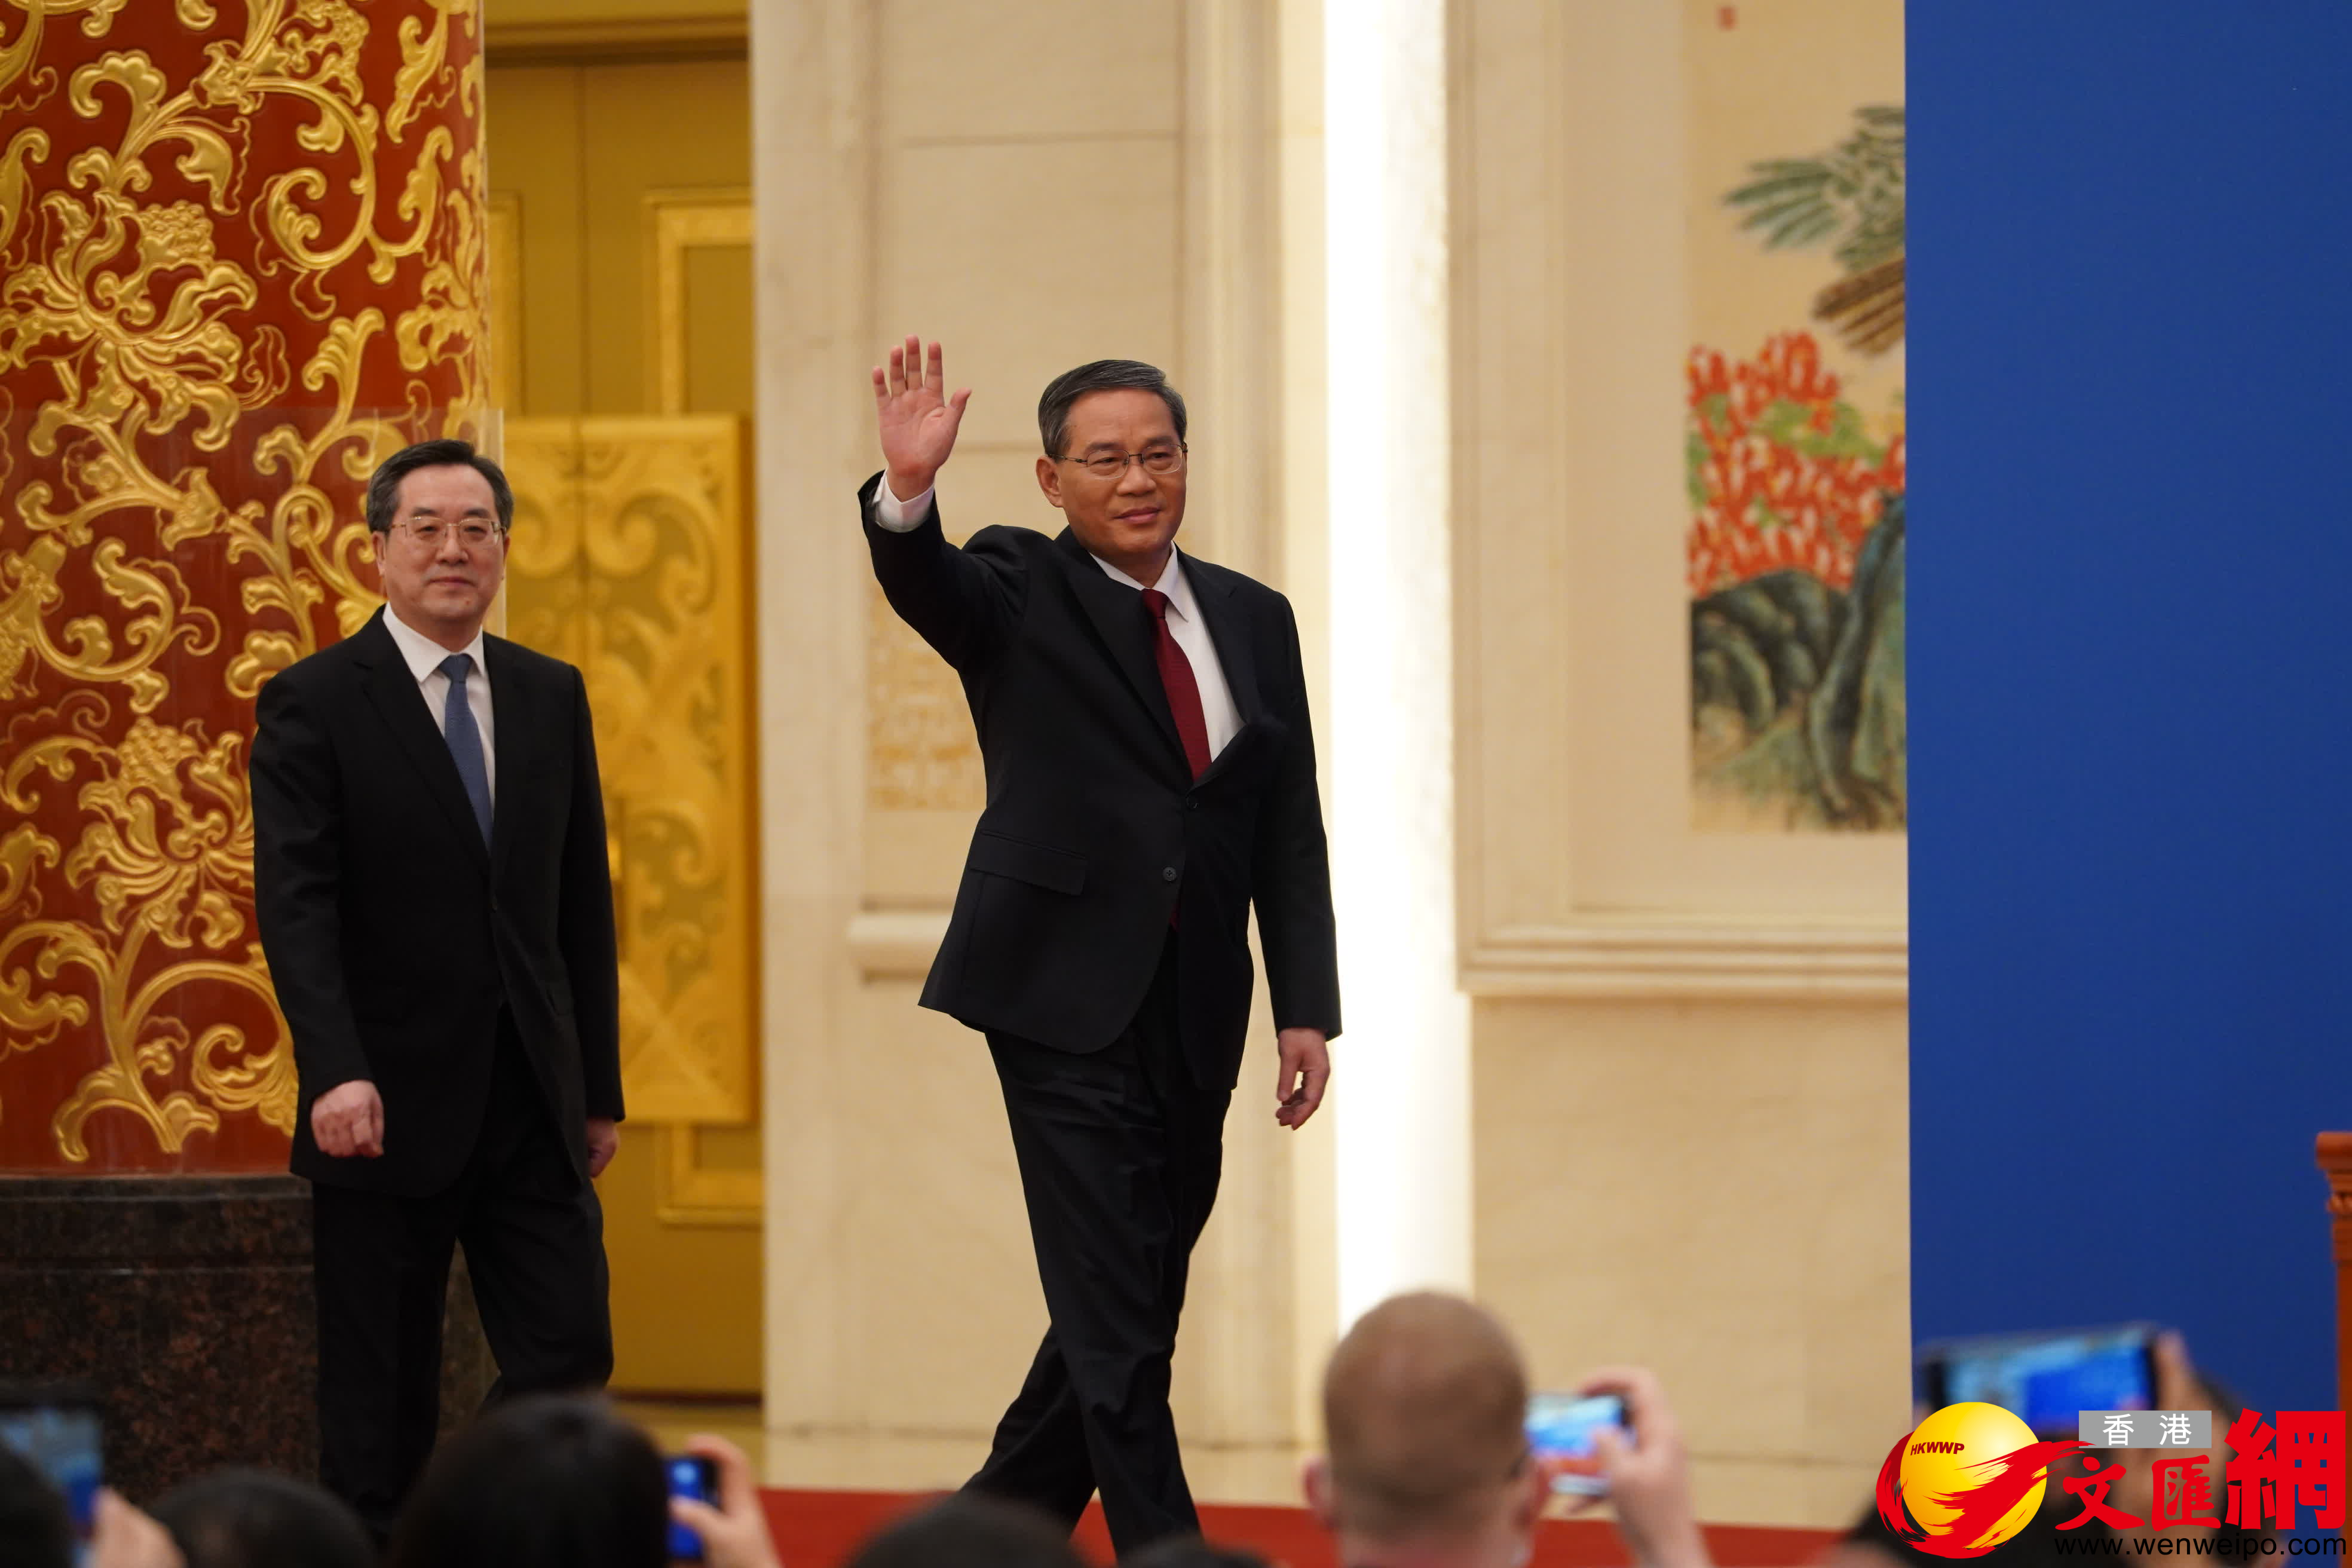 國務院總理李強向現場記者揮手致意。（大公文匯全媒體記者攝）